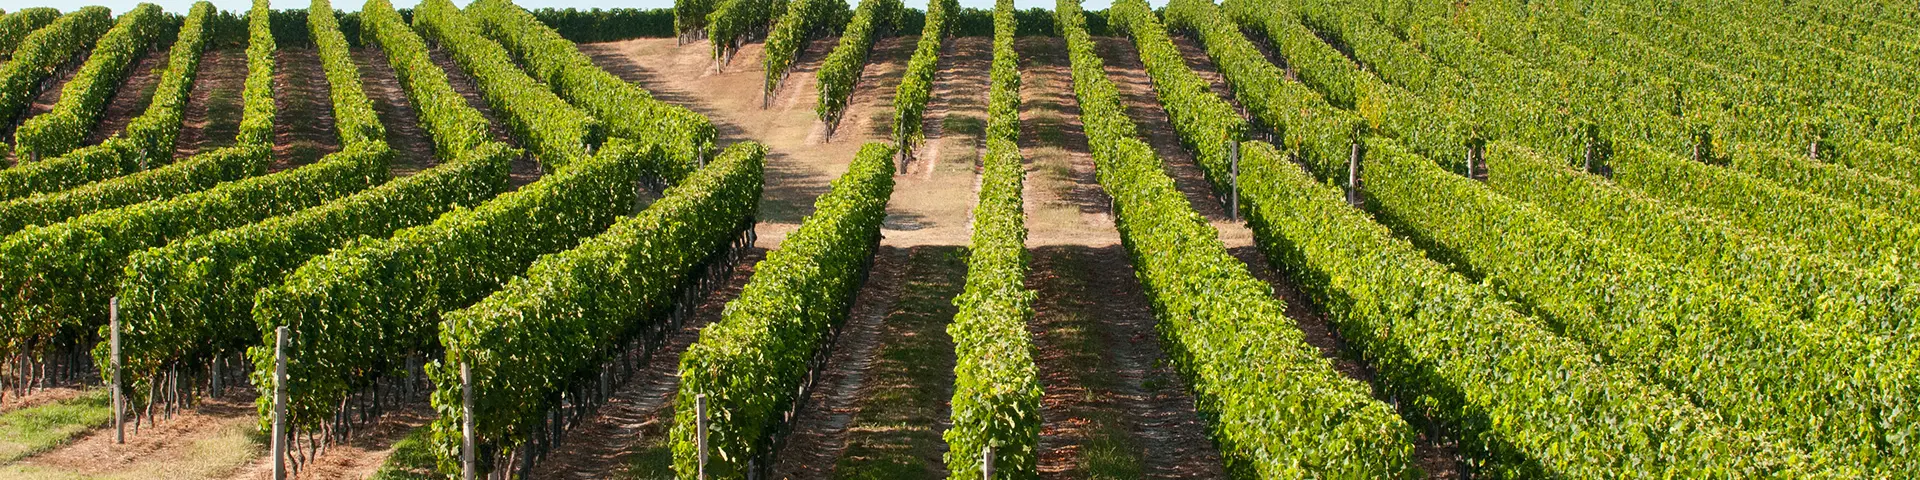 Vue des rangées de pieds de vigne, Aquitaine